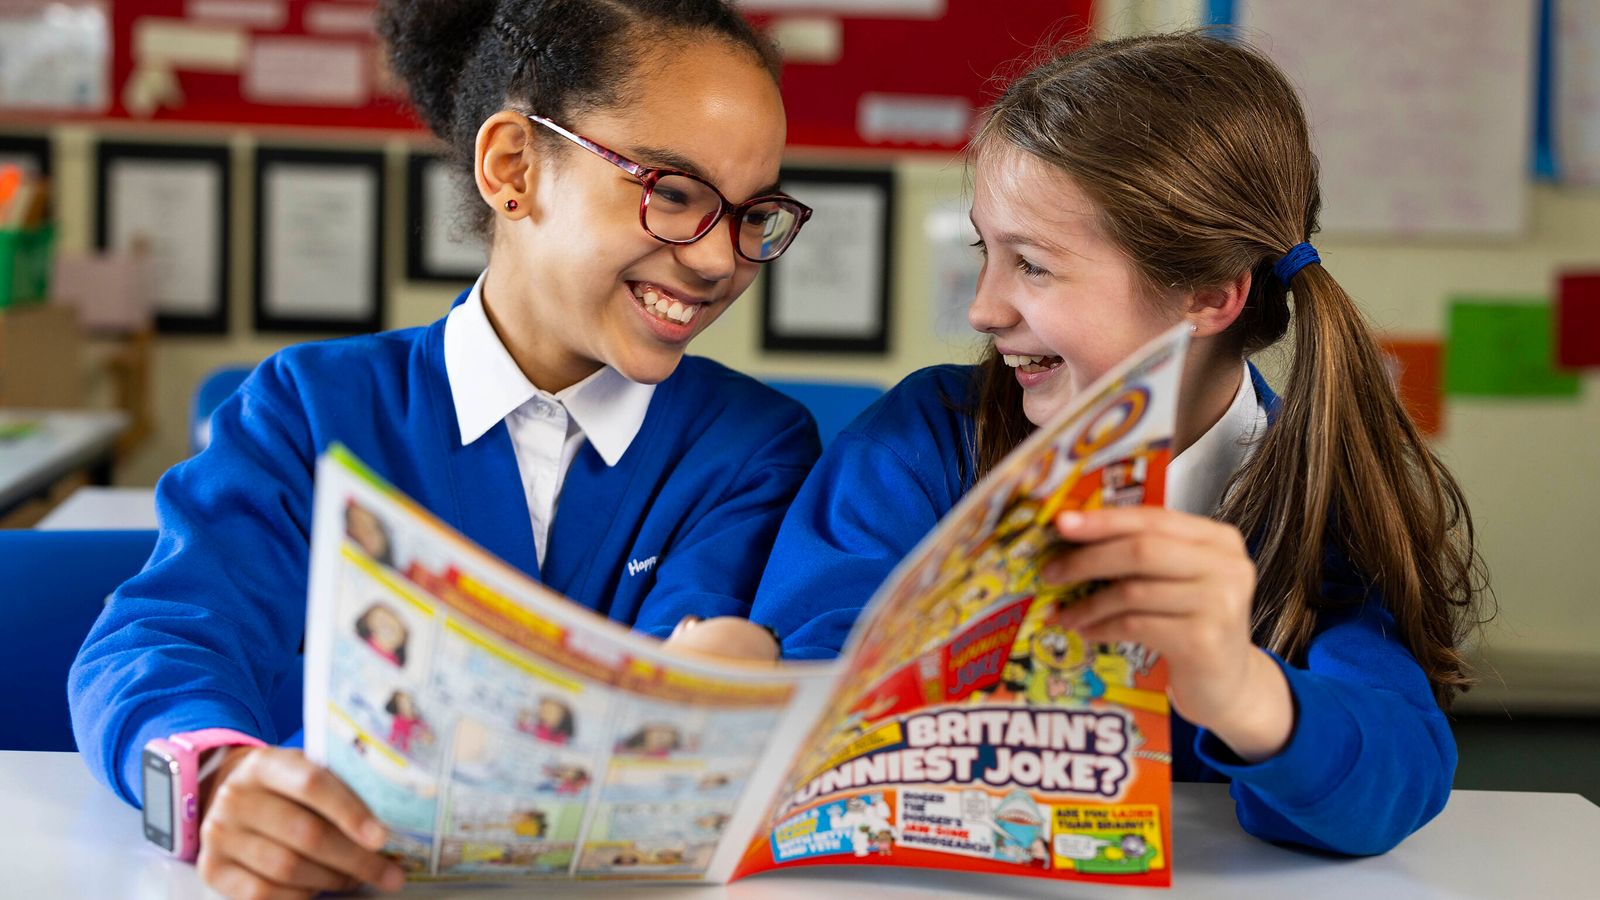 بينو يكشف أفضل 10 نكت كتبها أطفال المدارس الابتدائية لمسابقة الصف المضحك في بريطانيا |  أخبار المملكة المتحدة